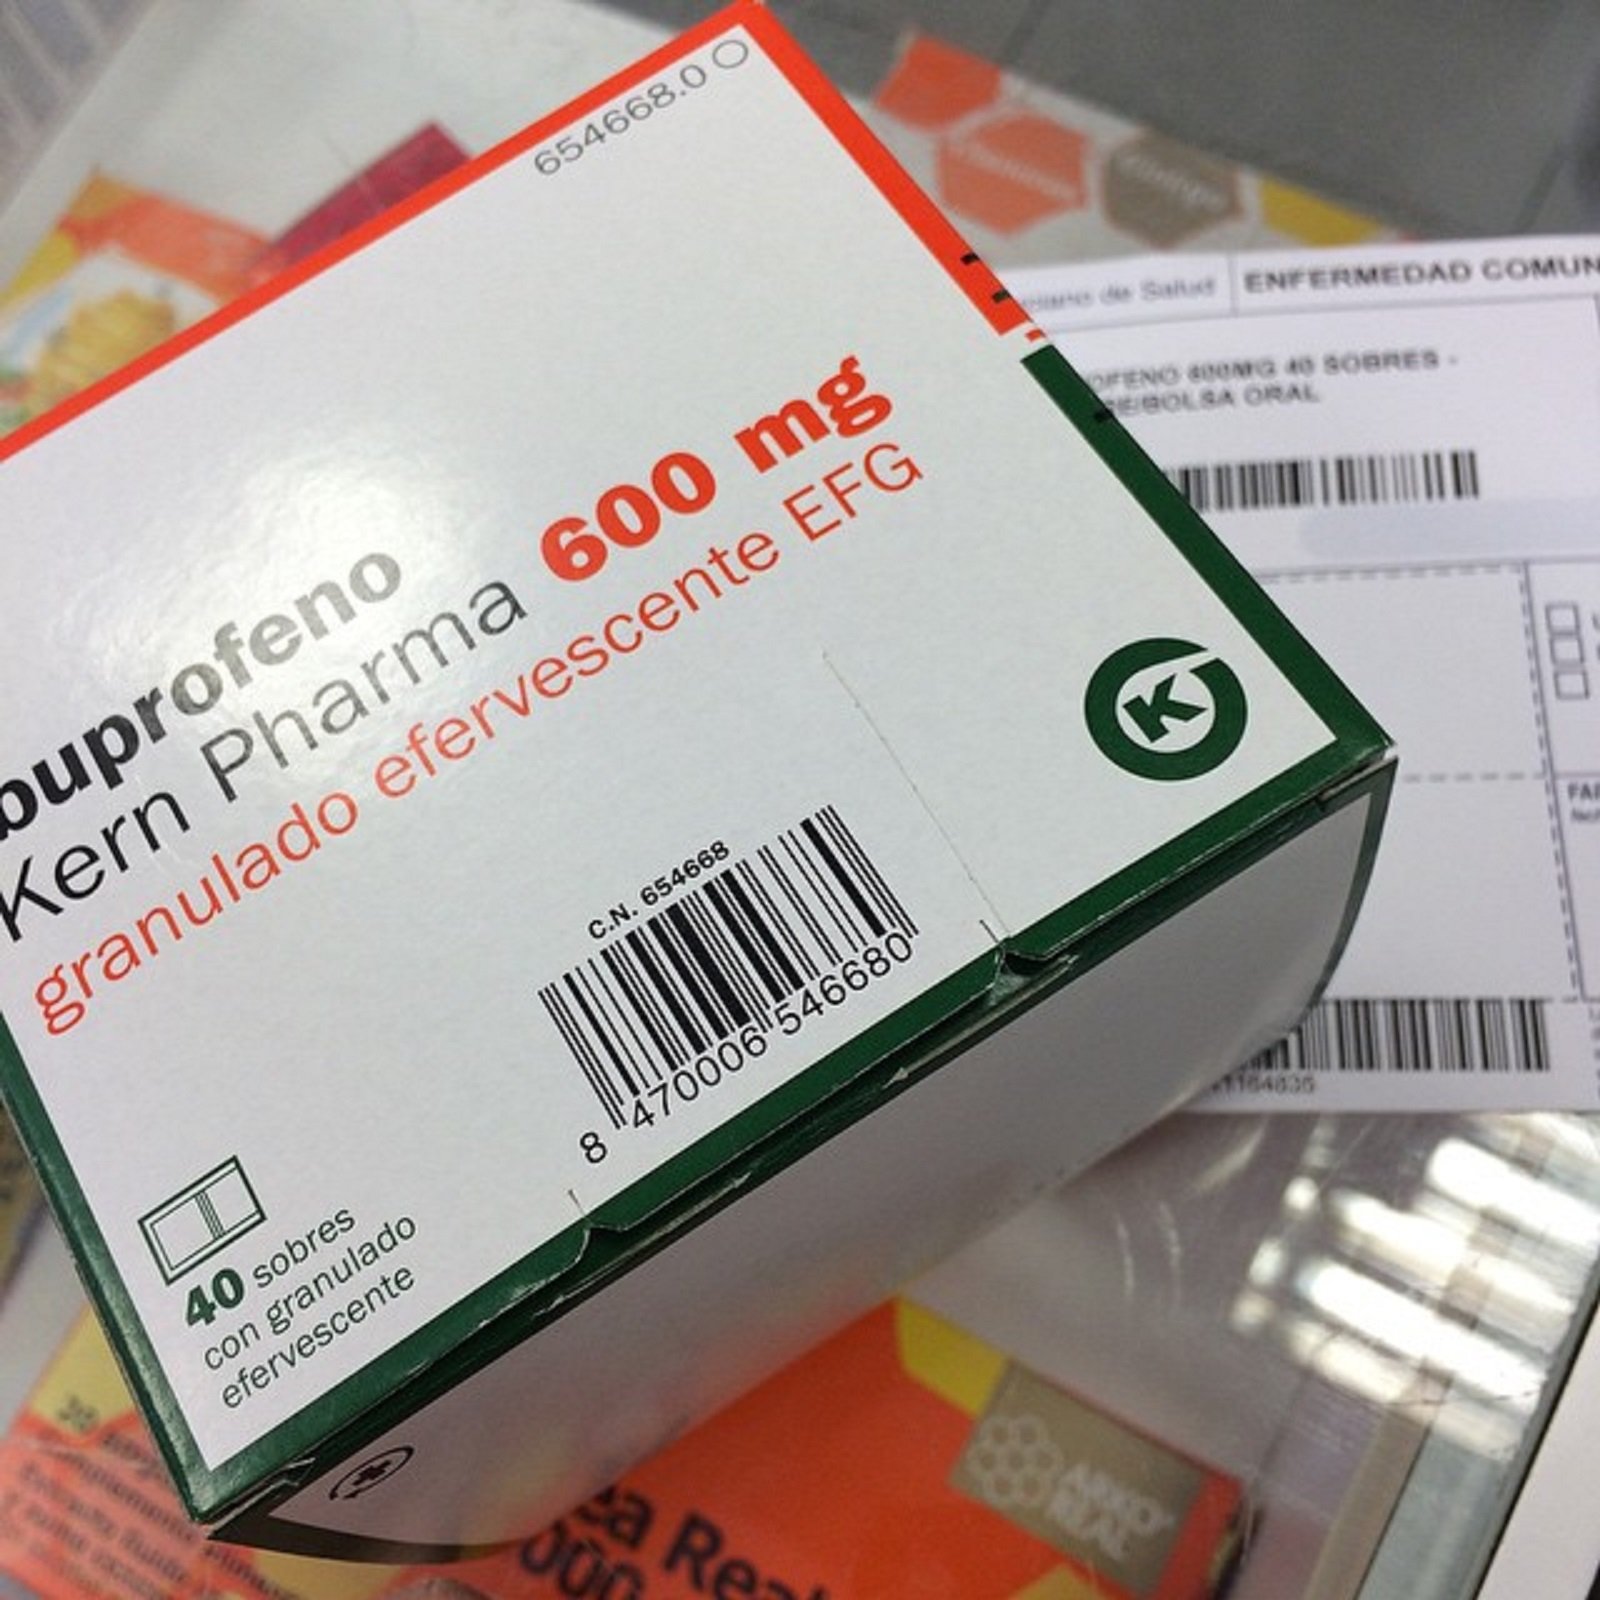 La OMS recomienda usar paracetamol antes que ibuprofeno contra el coronavirus